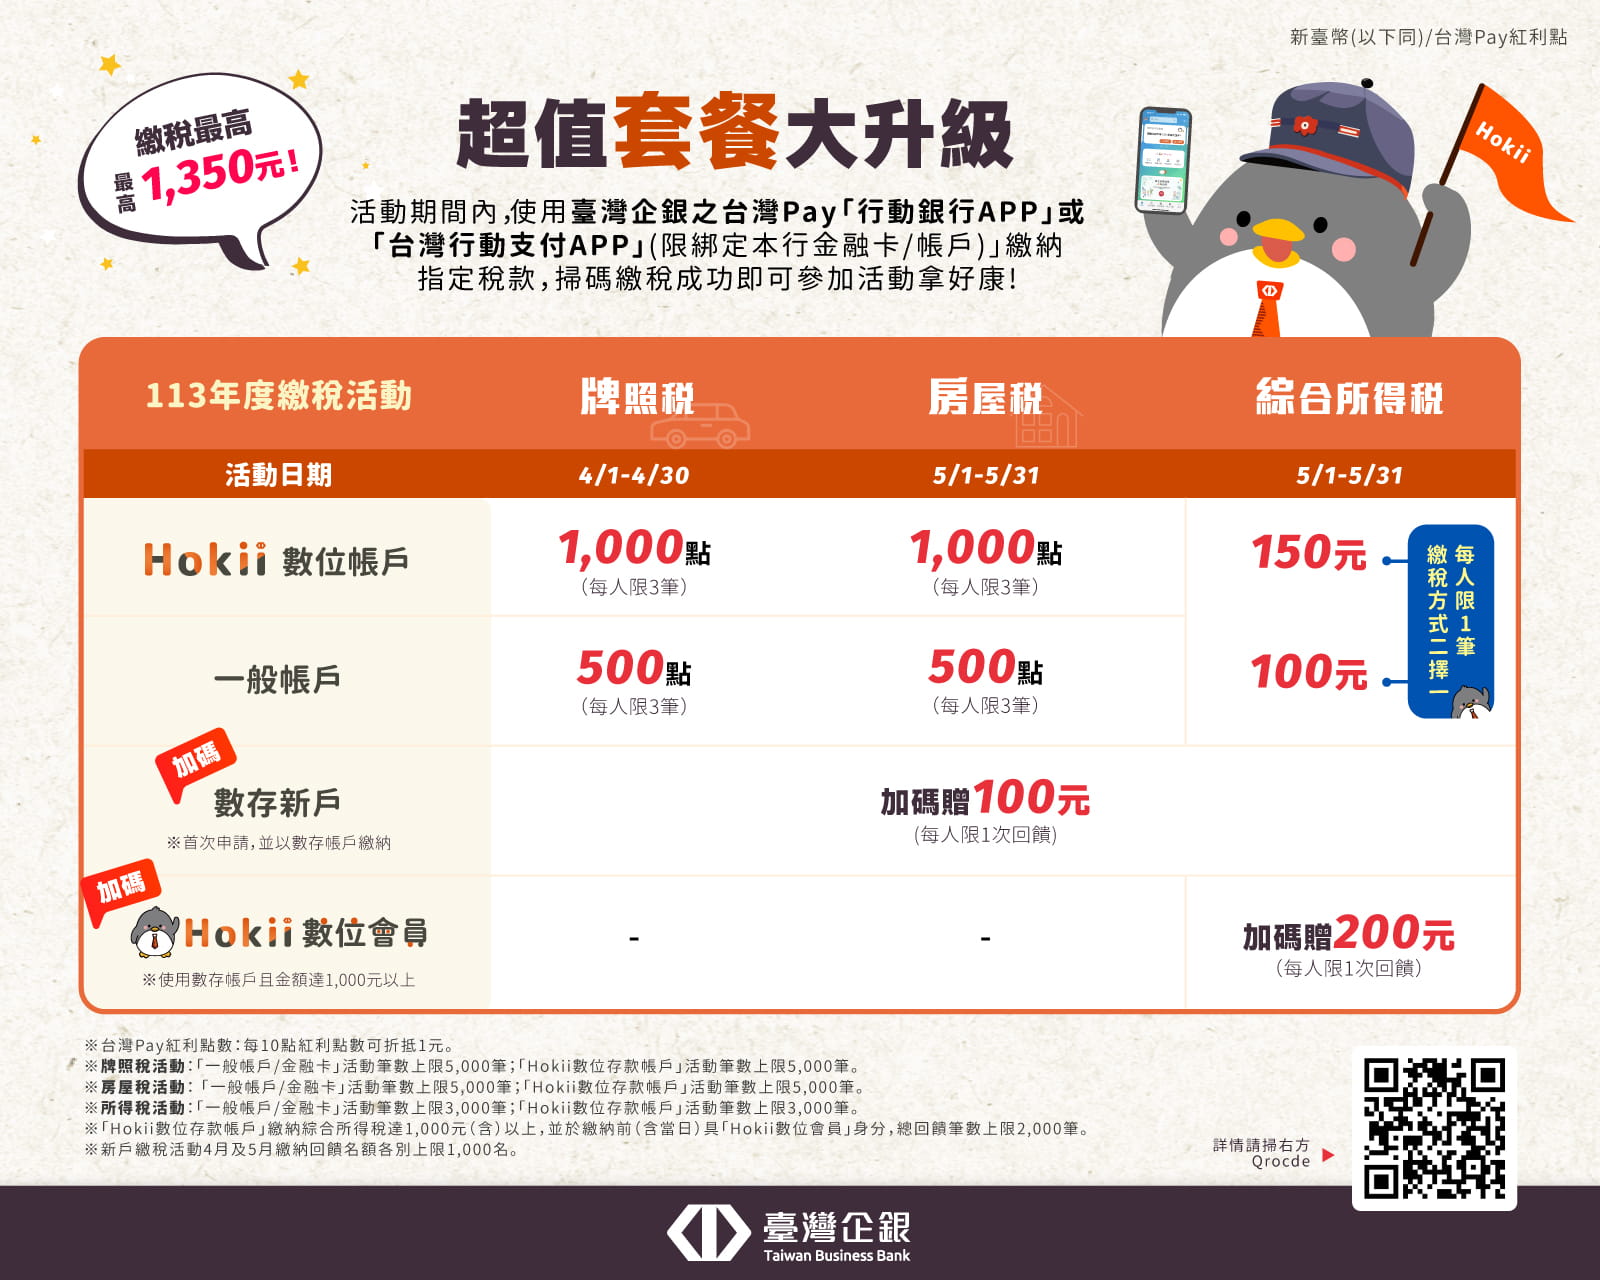 臺灣企銀為小資族打造繳稅套餐優惠 最高享1,350元回饋